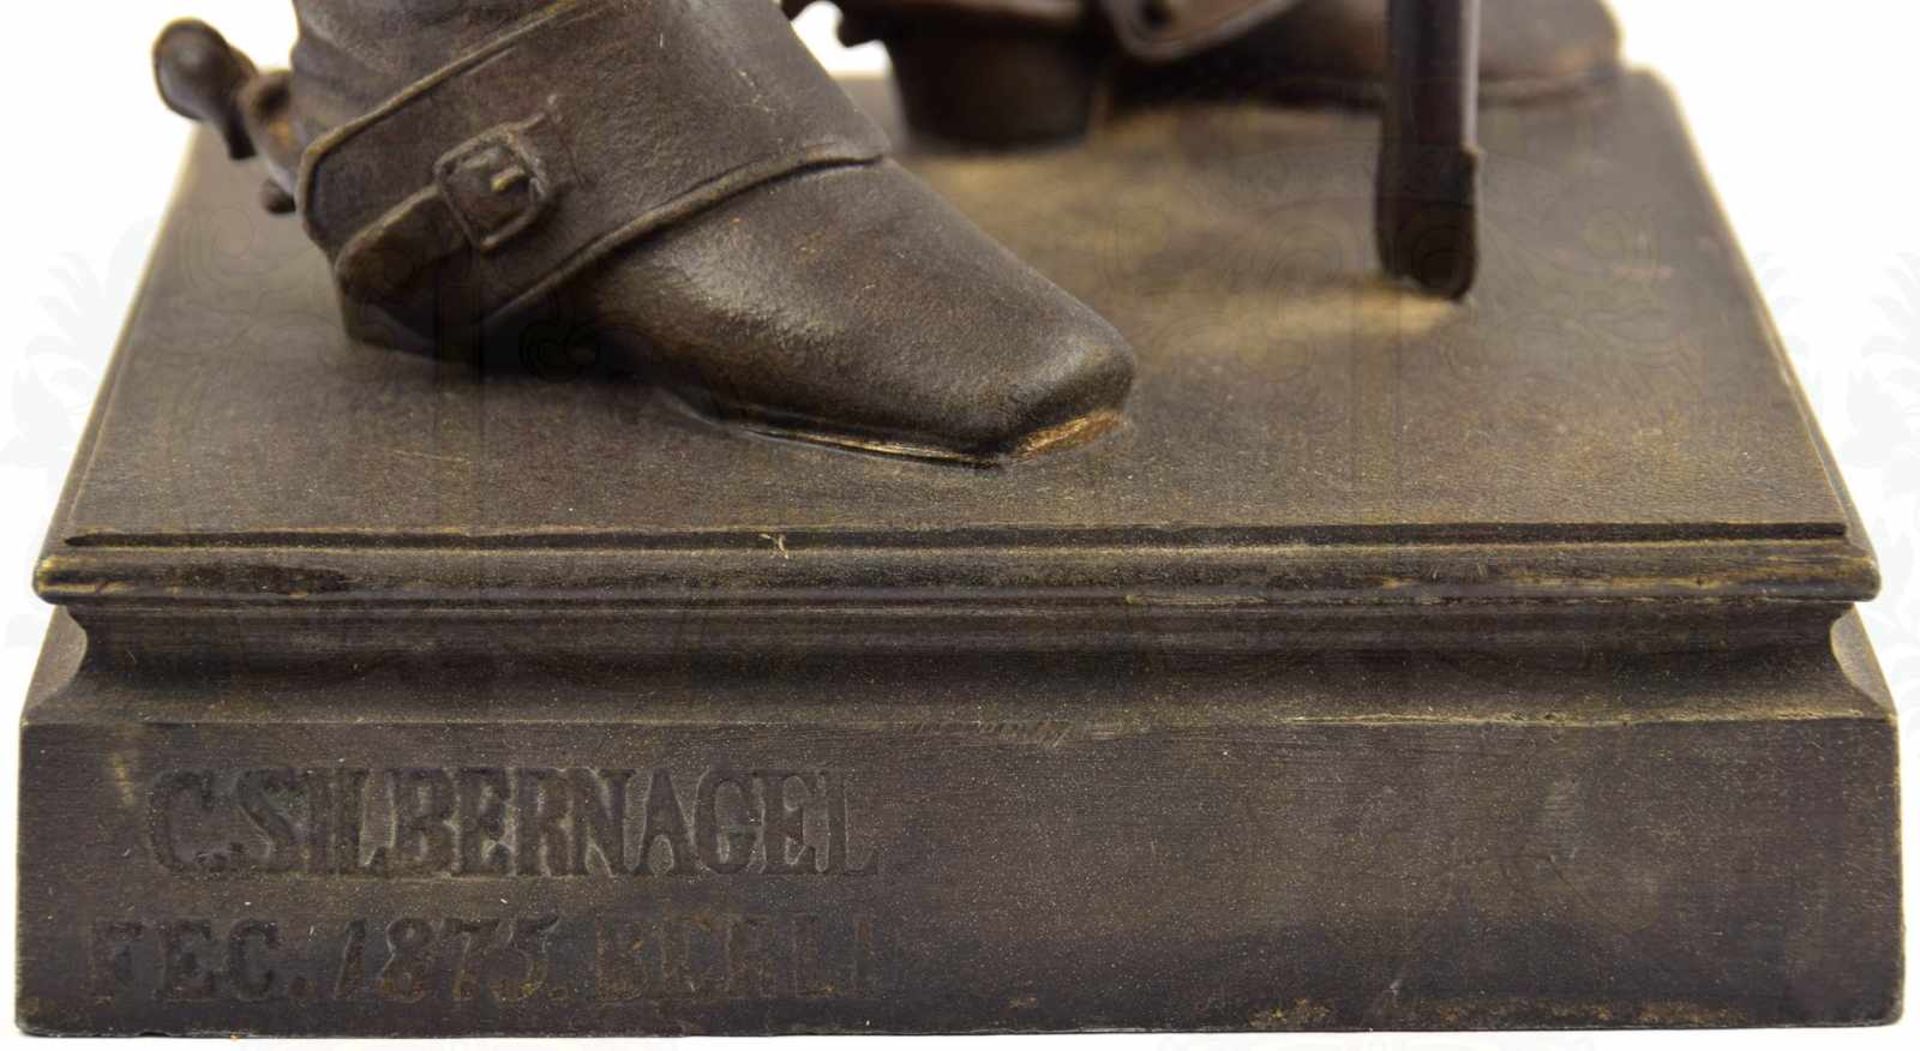 STATUE FÜRST BISMARCK, Zinkguß/bronziert, Sockel bez. „C. Silbernagel Fec. 1875 Berlin“, - Bild 5 aus 5